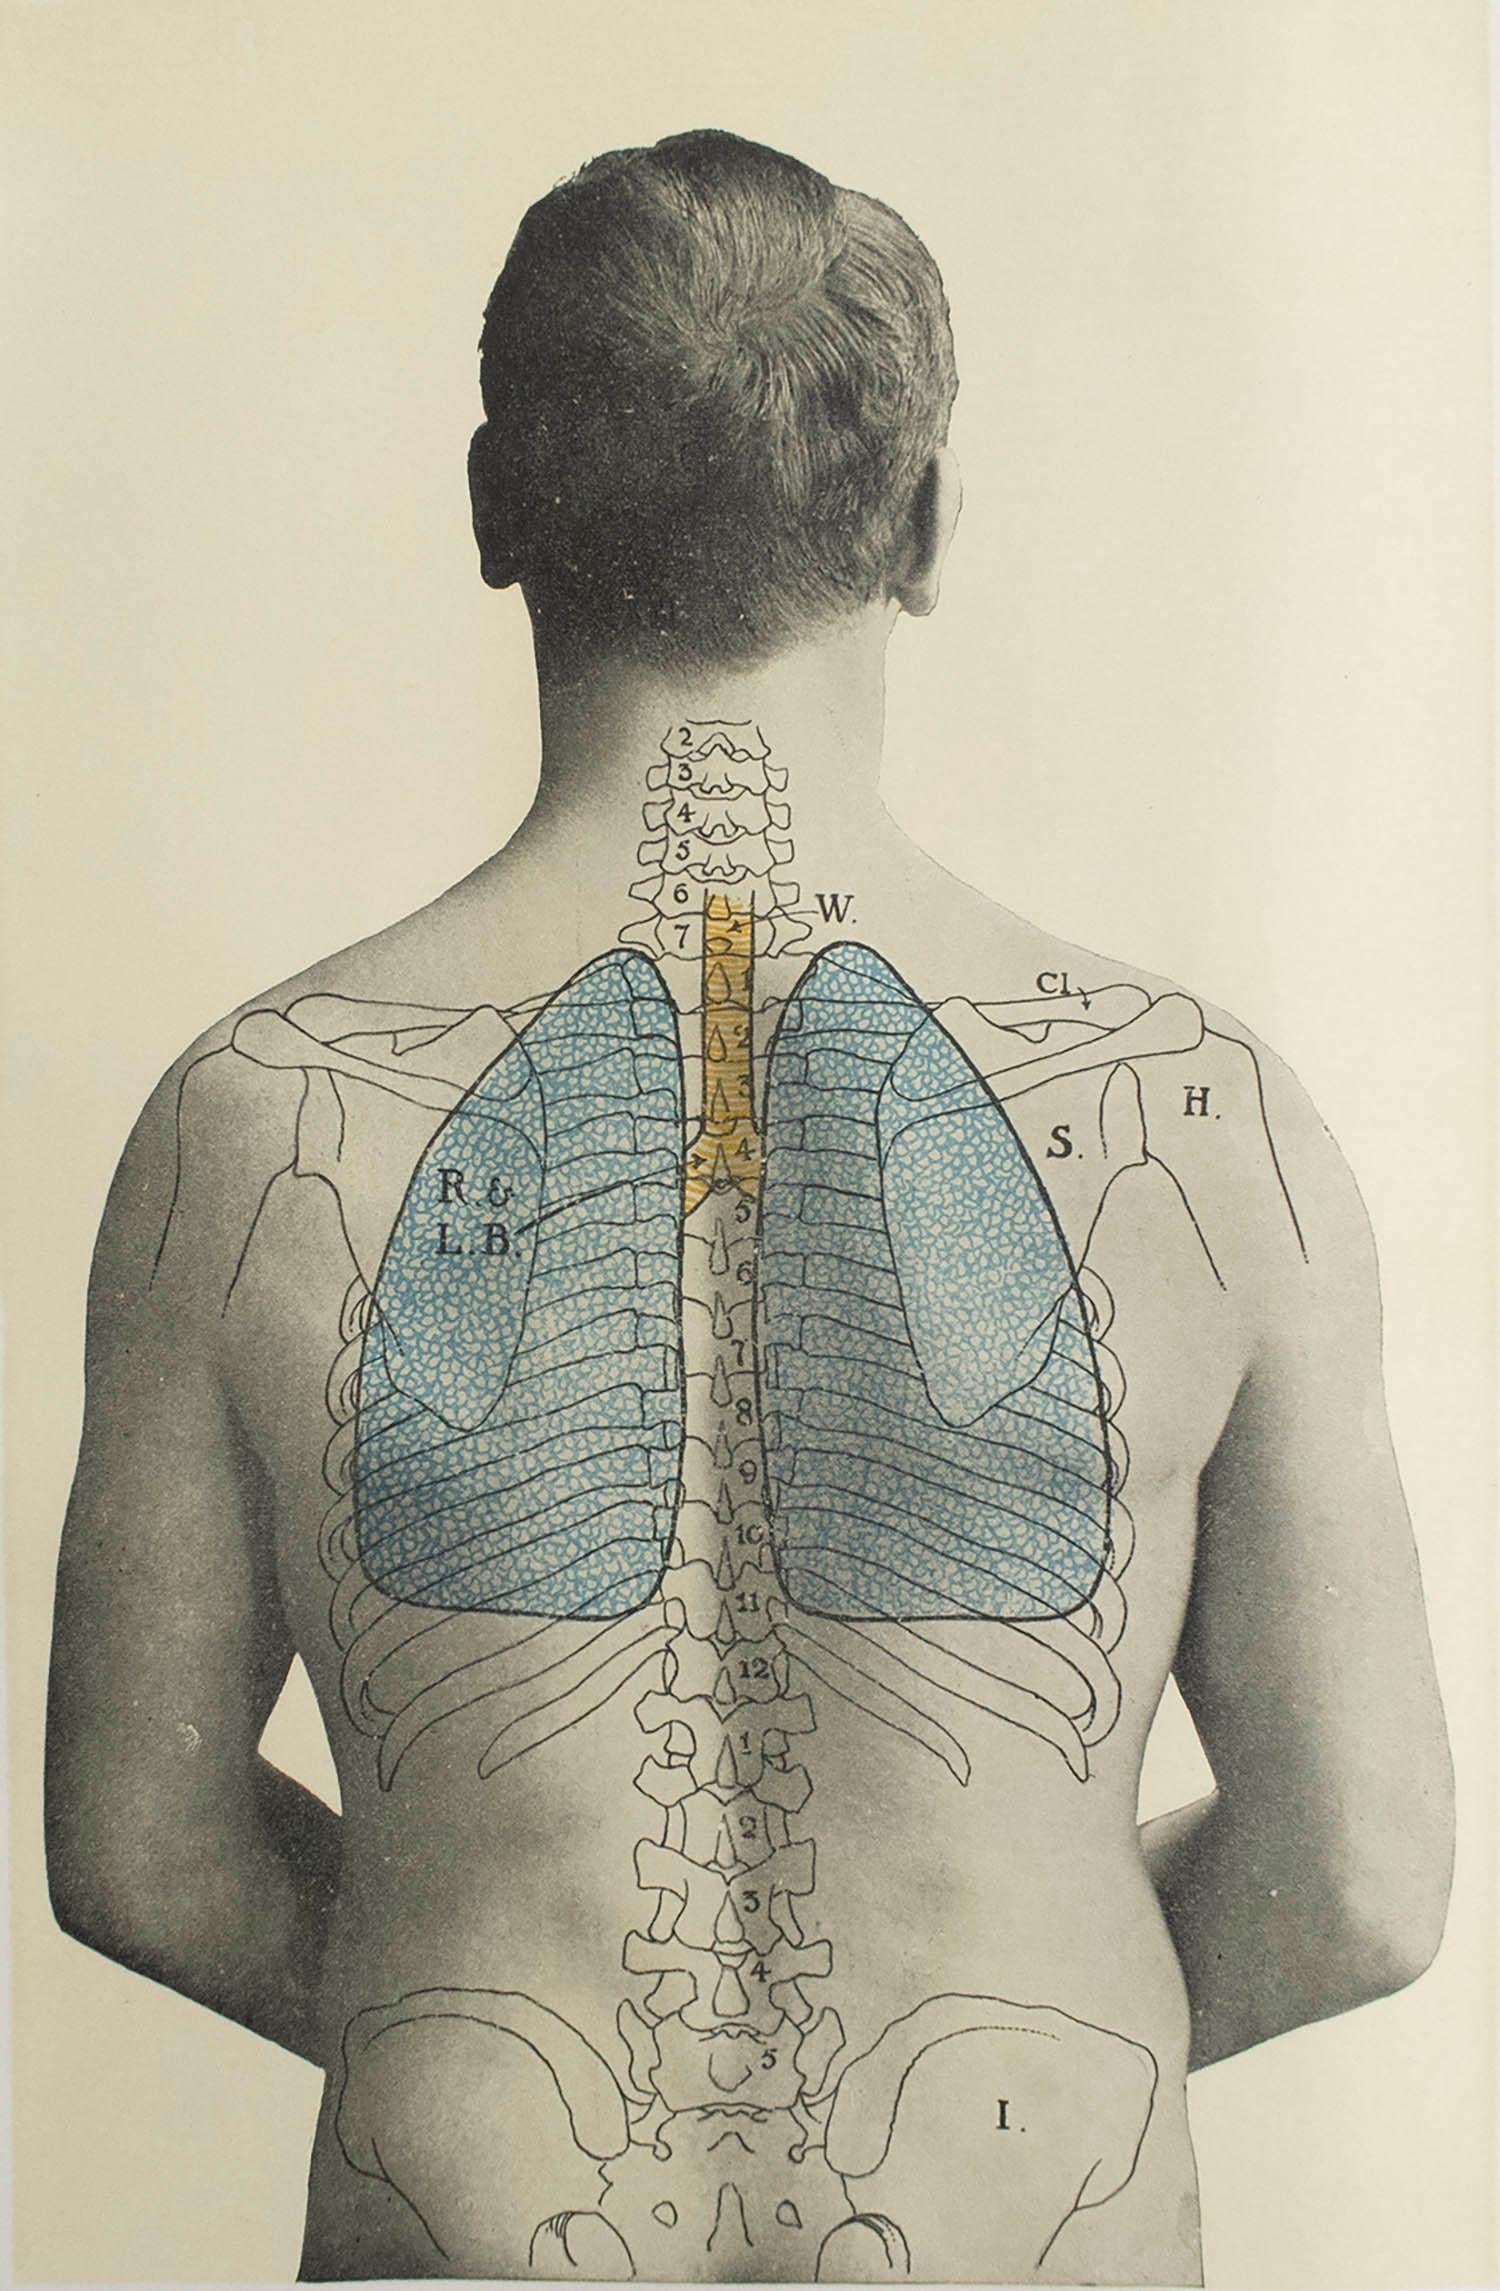 Grande image d'intérêt médical.

Non encadré.

Publié, vers 1900.







